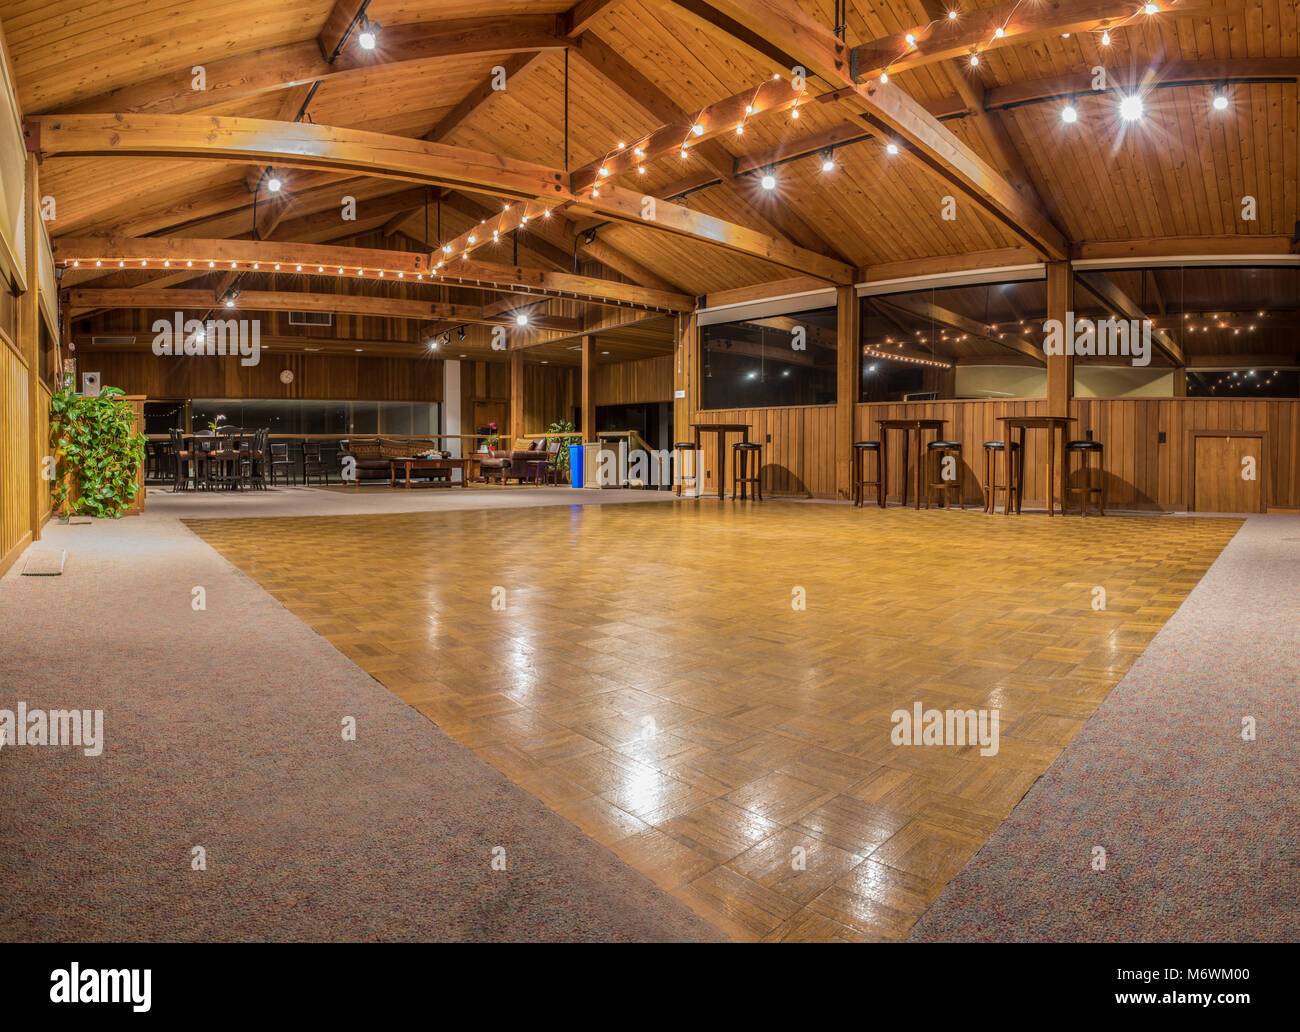 Exquisite Holzboden und Gewölbedecke Innenraum der Dance Hall Partyraum mit funkelnden Lichtern. Pierpont Racquet Club von Ventura, Kalifornien 2018. Stockfoto